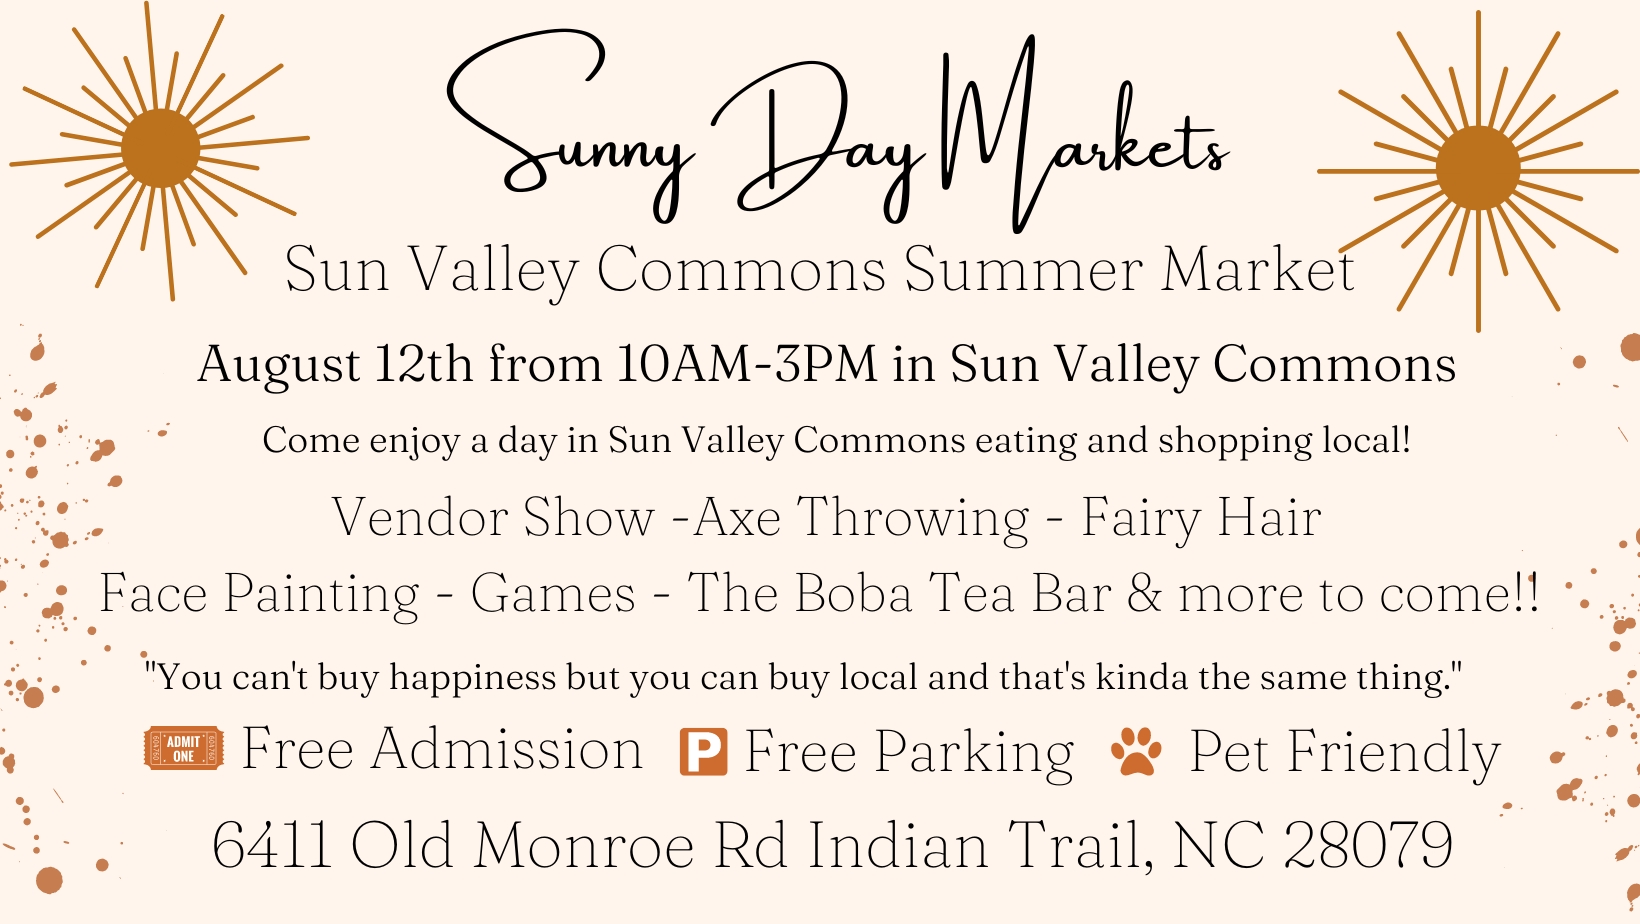 Sun Valley Commons Summer Market